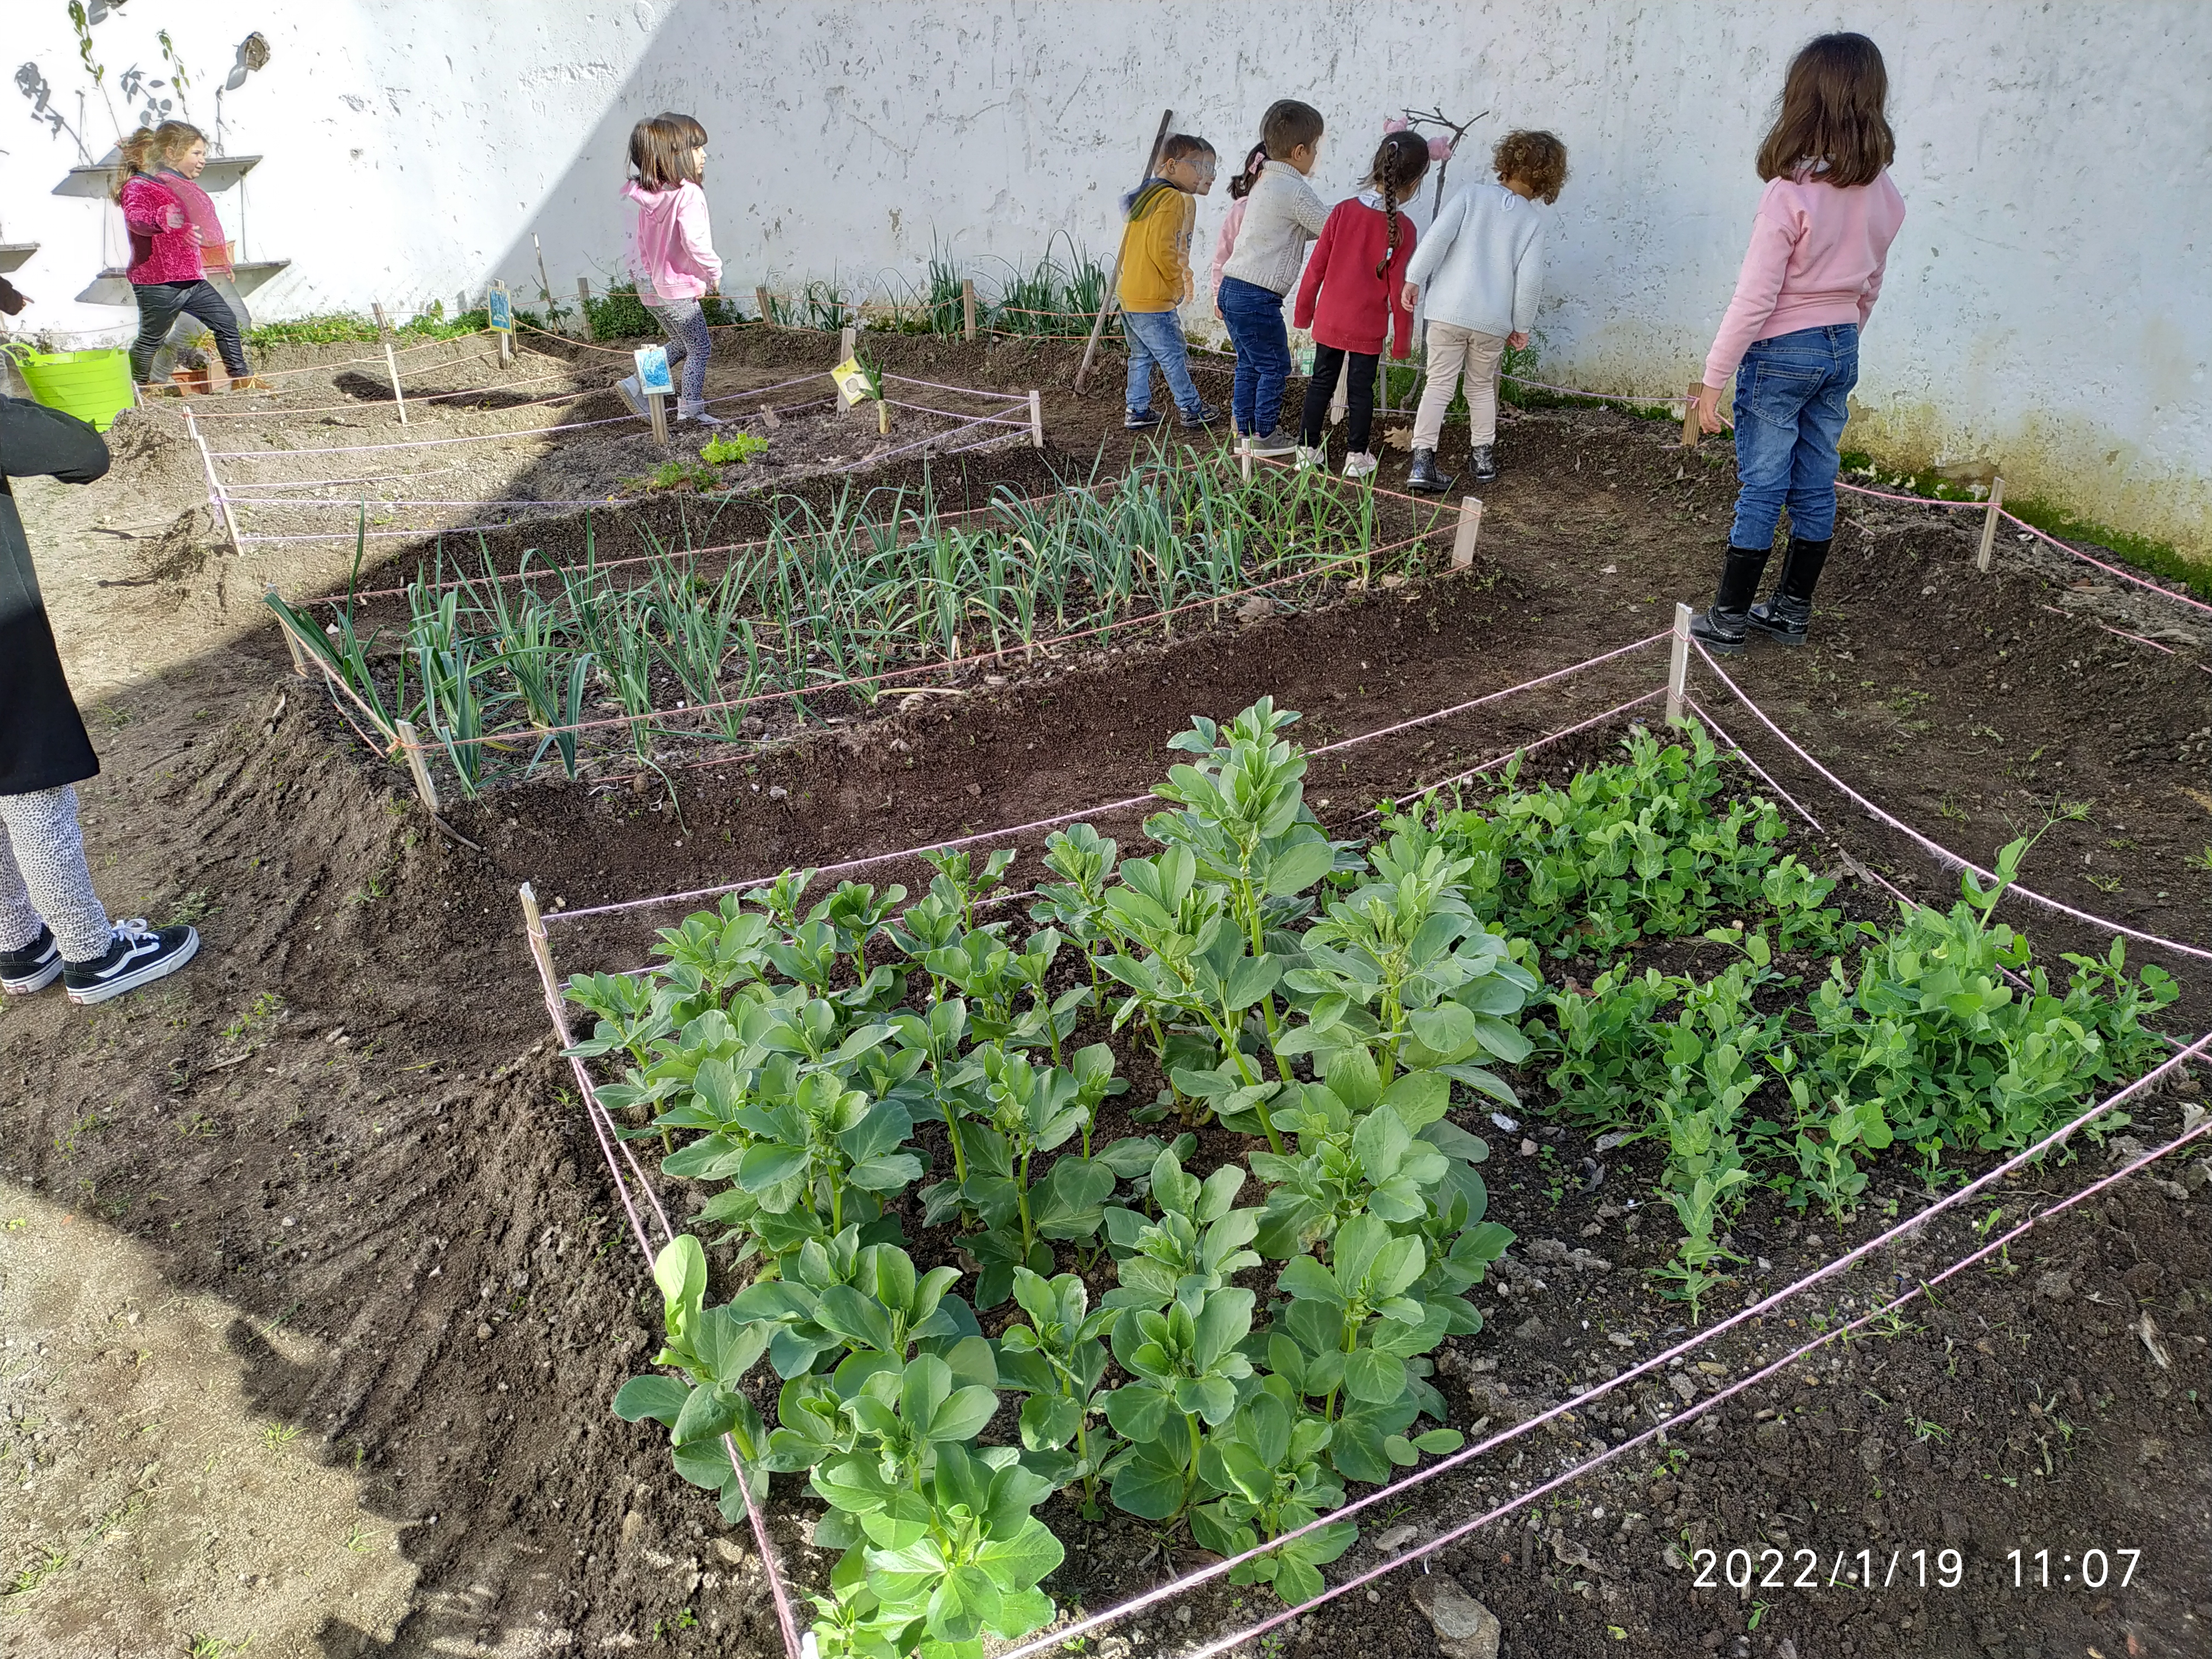 A nossa Horta em janeiro
Durante o mês de janeiro foram realizadas atividades de limpeza e manutenção da horta. As crianças foram limpando canteiros, observando o crescimento das plantas, realizando a rega sempre que necessário.